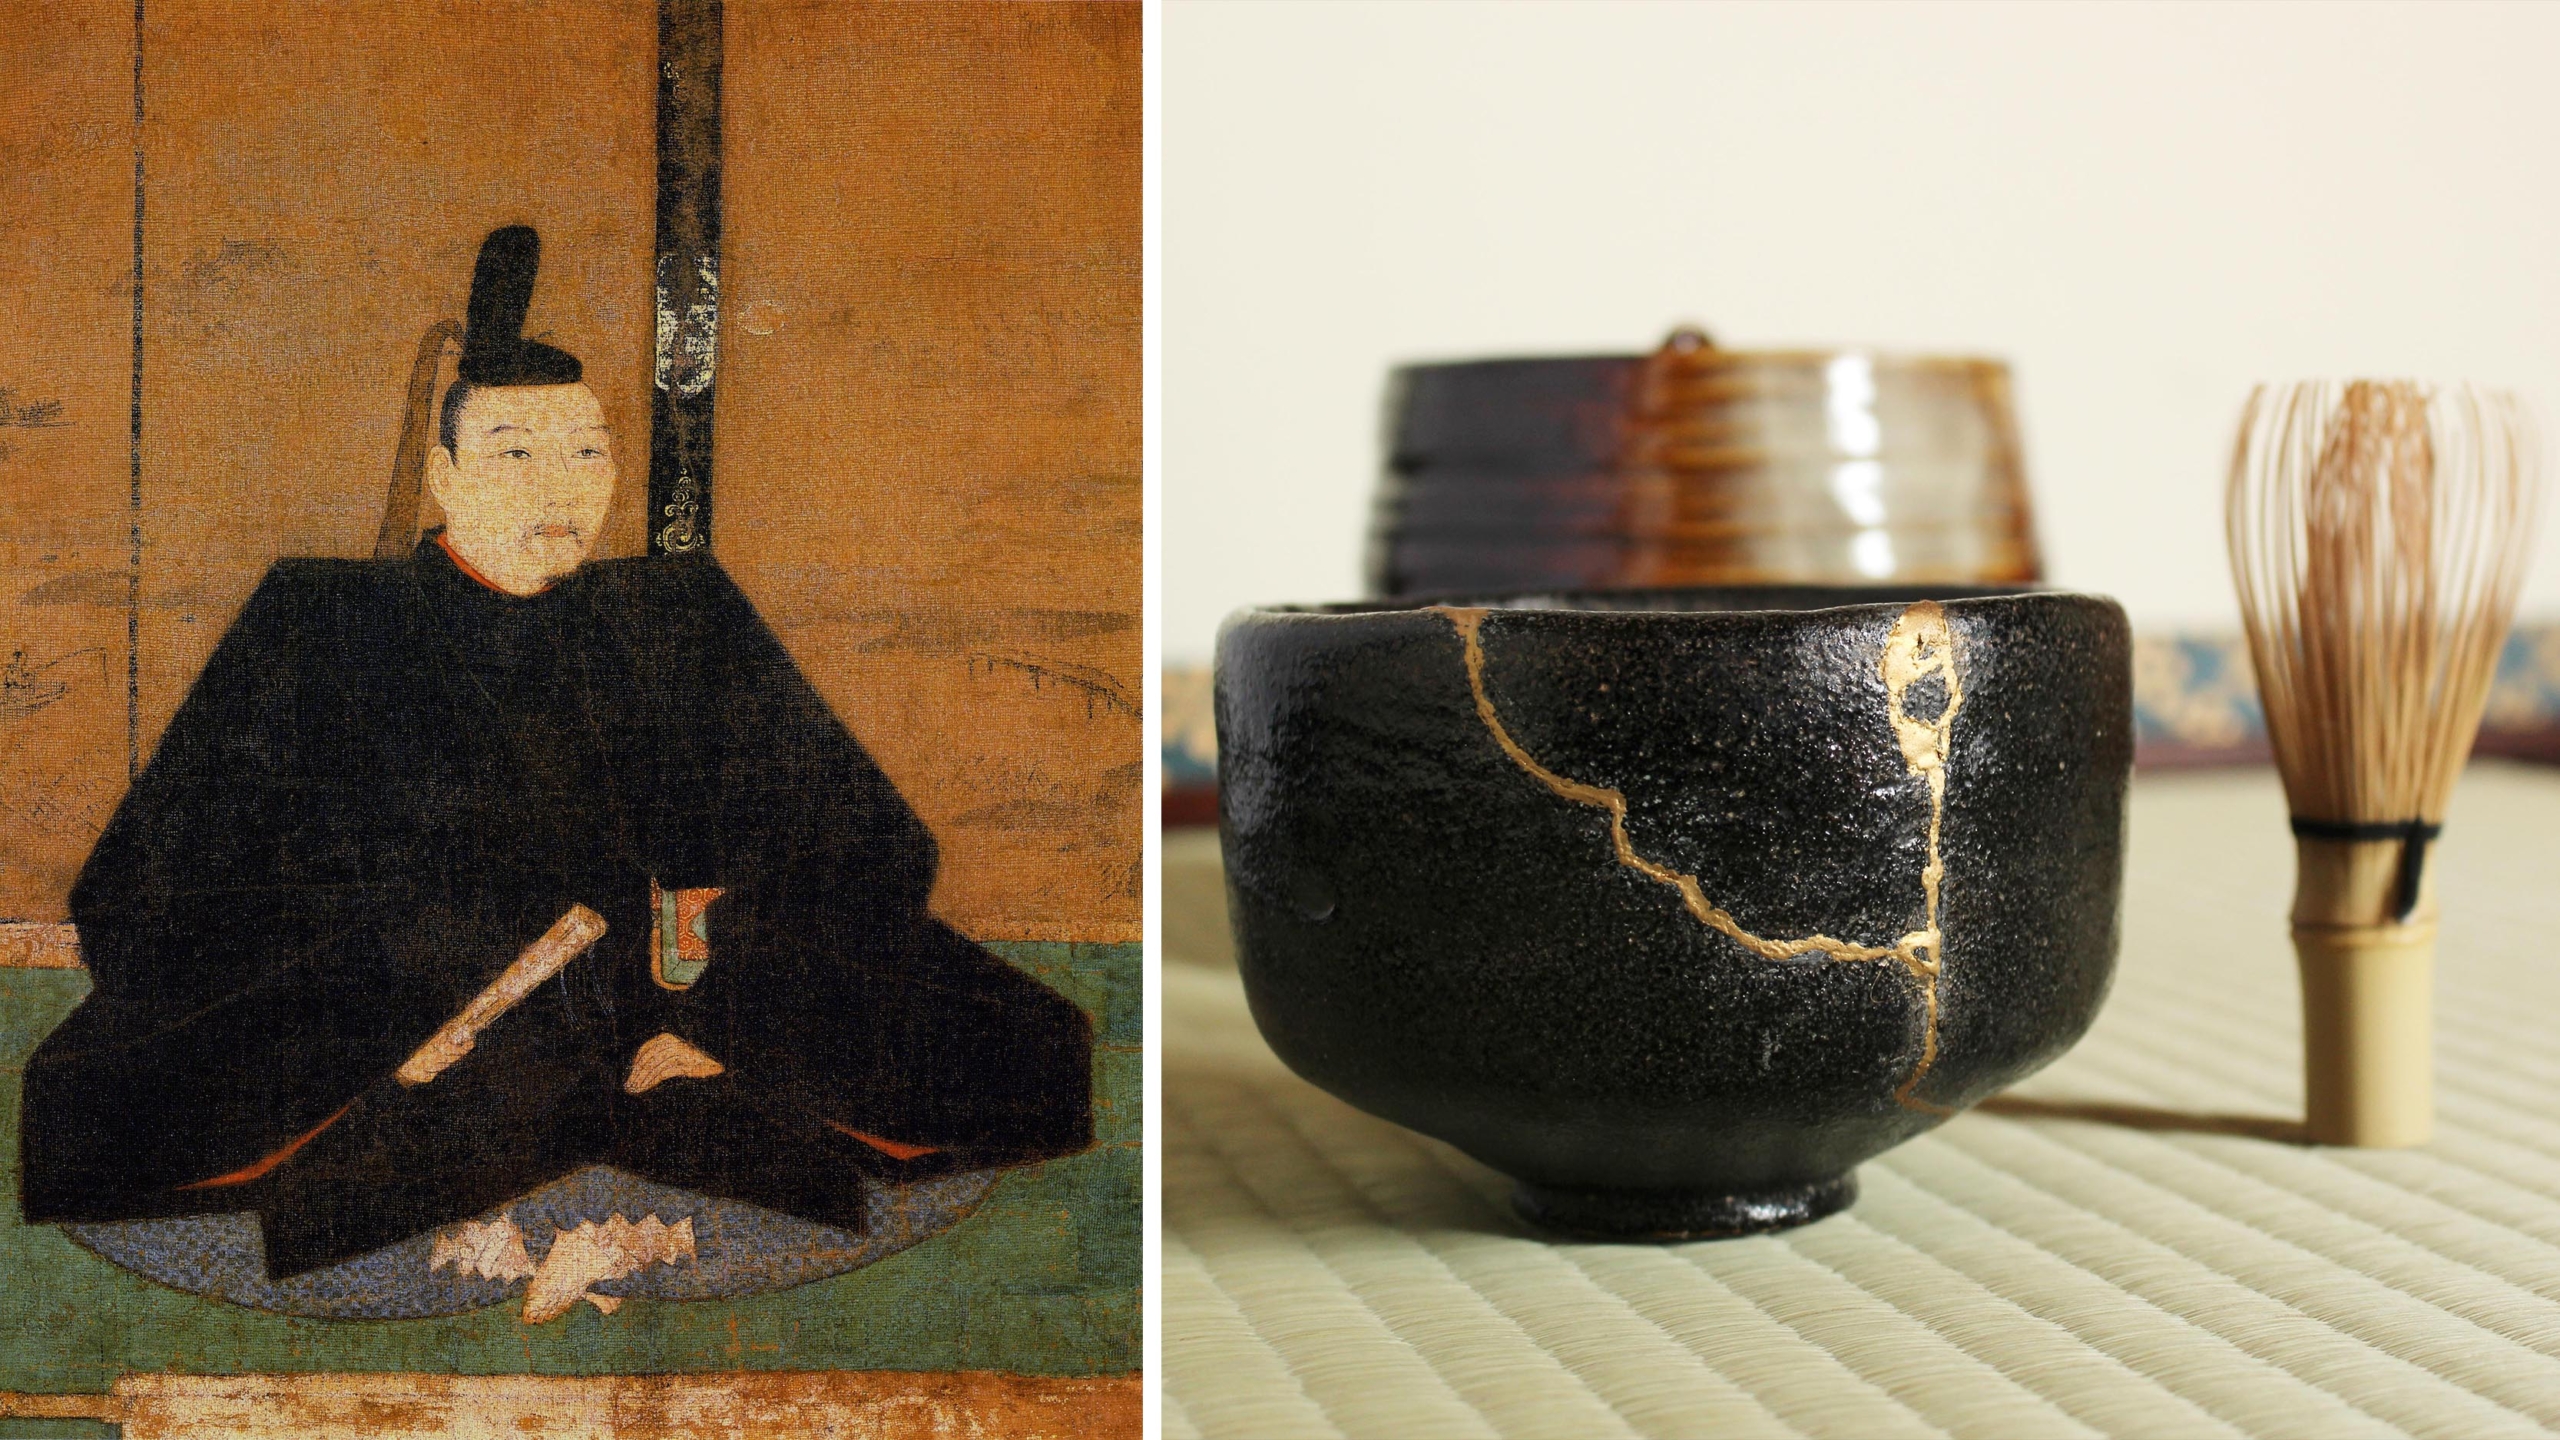 (Trái) Một bức chân dung của Tướng quân Ashikaga Yoshimasa. (Ảnh: Tài sản công); (Phải) Một ly nước sử dụng nghệ thuật kintsugi để hàn gắn lại. (Lia_t/Shutterstock)